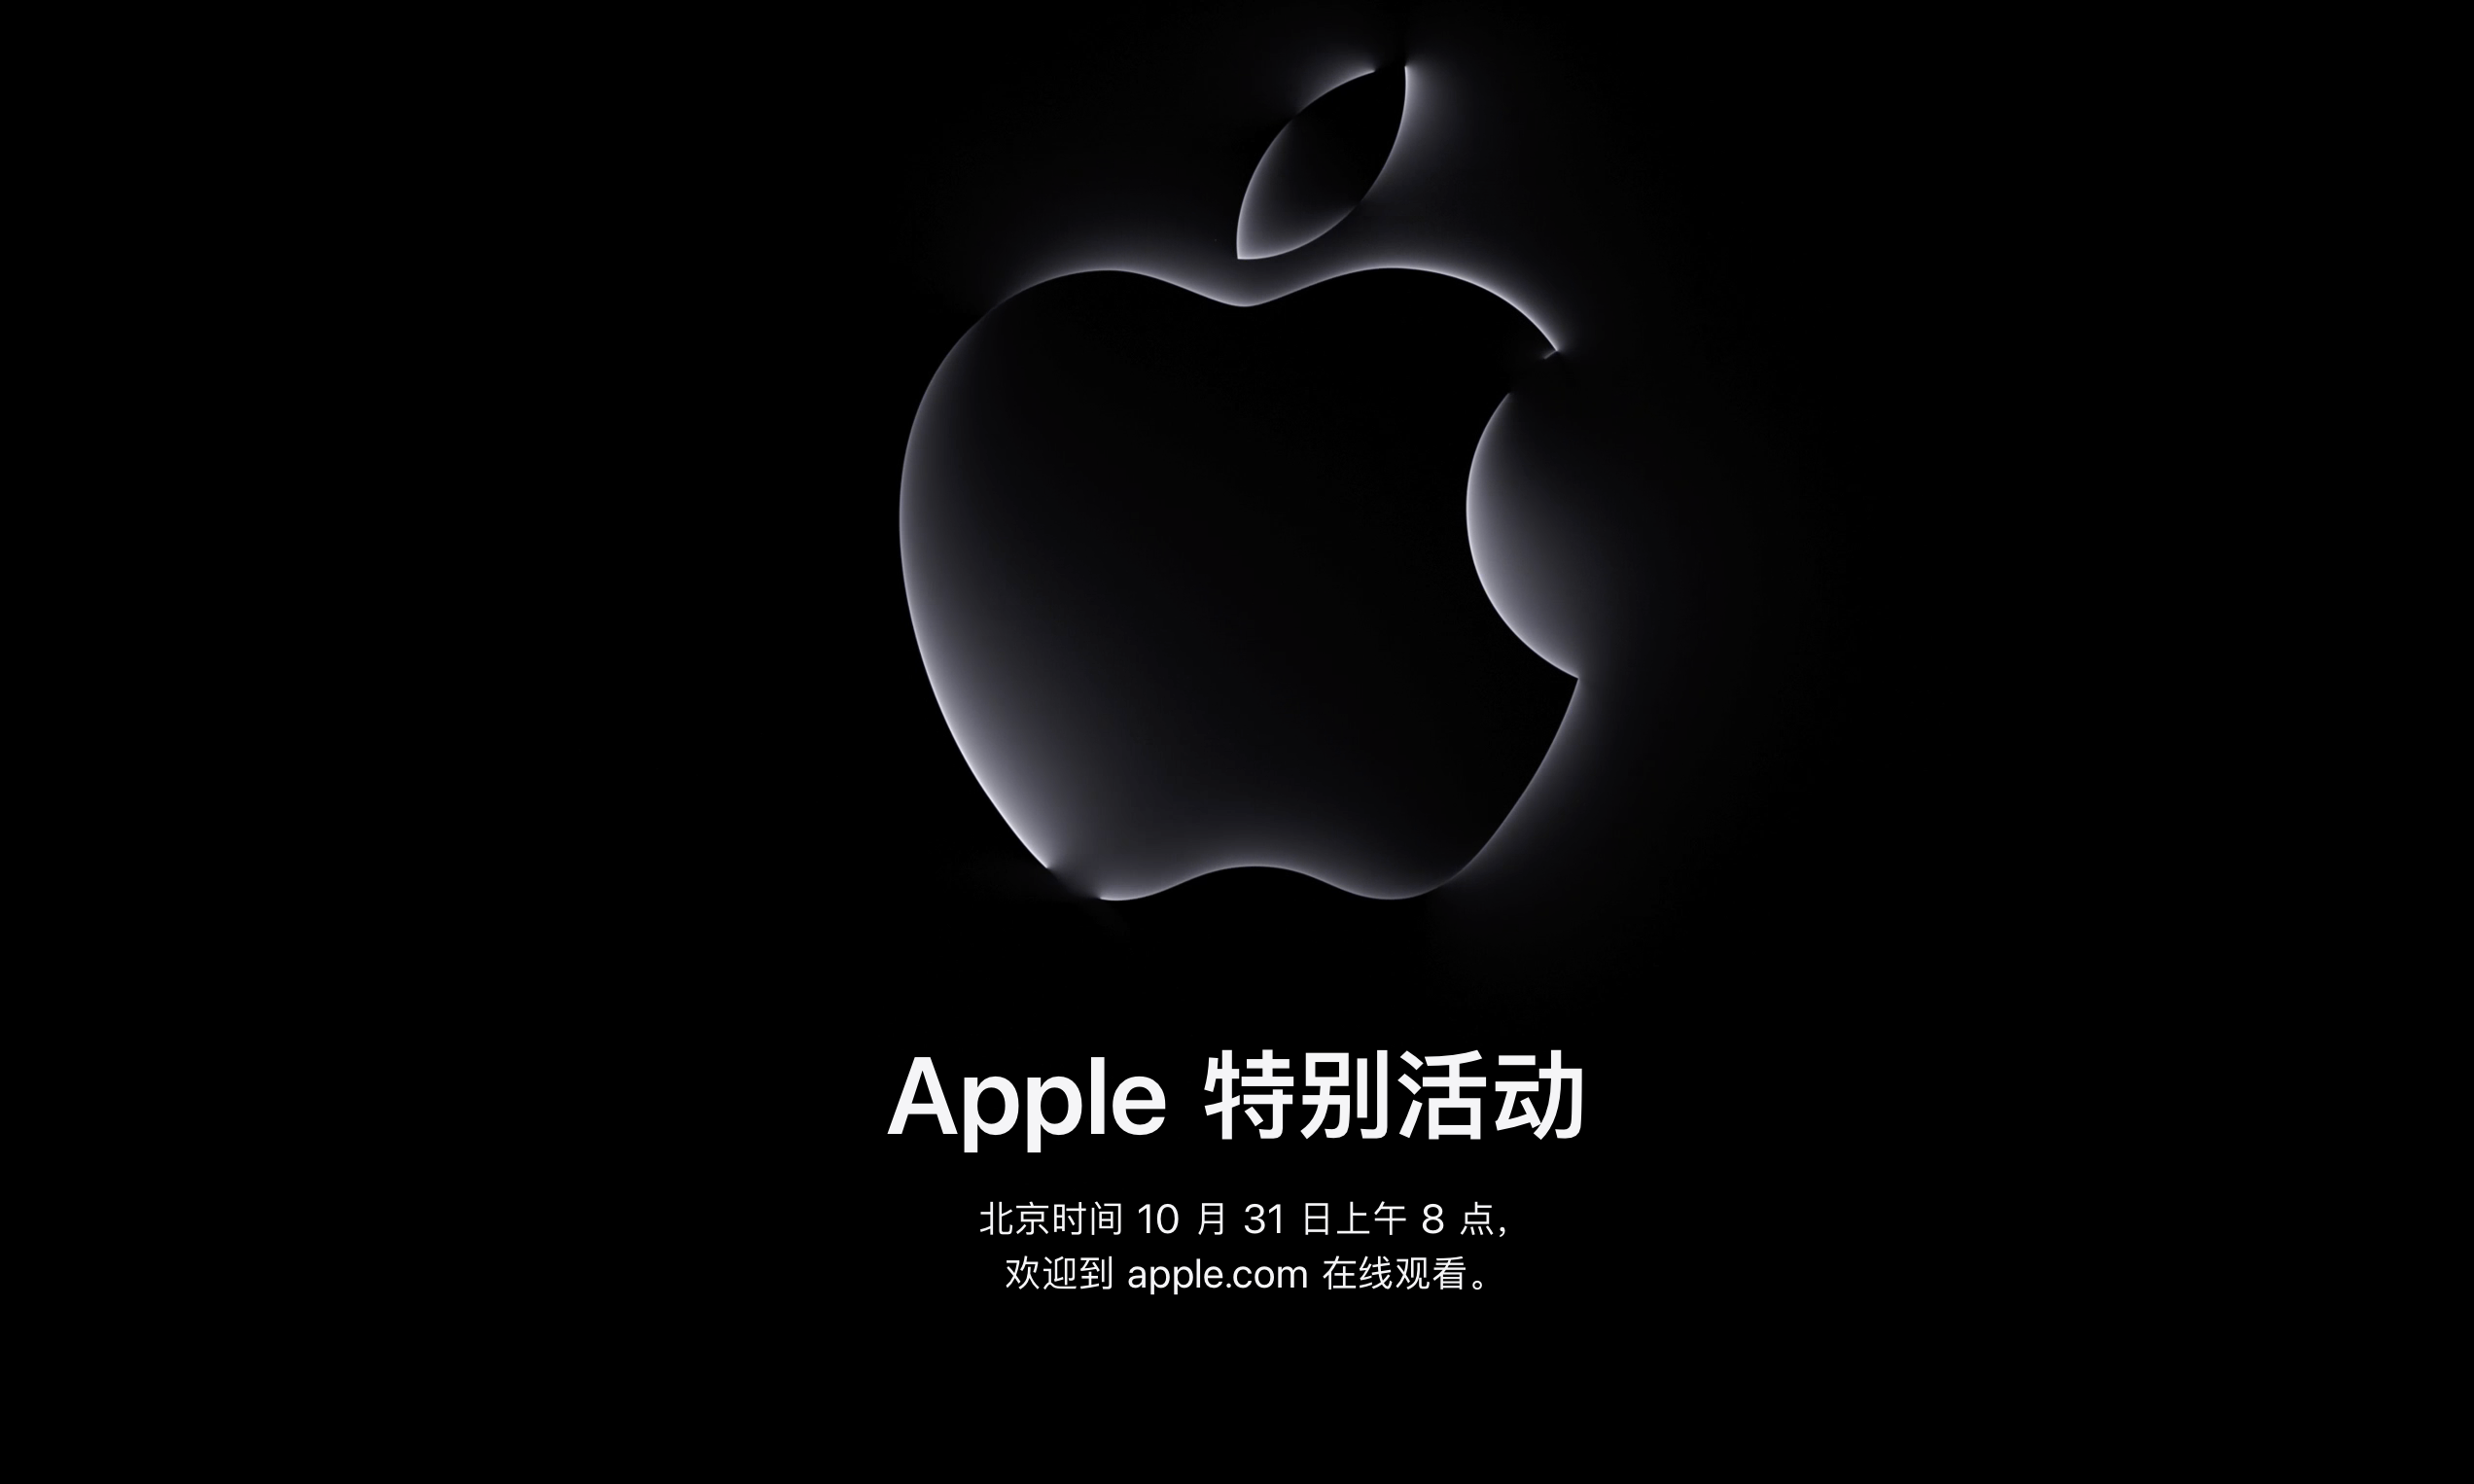 苹果官宣将于 10 月 31 日早上举行发布活动